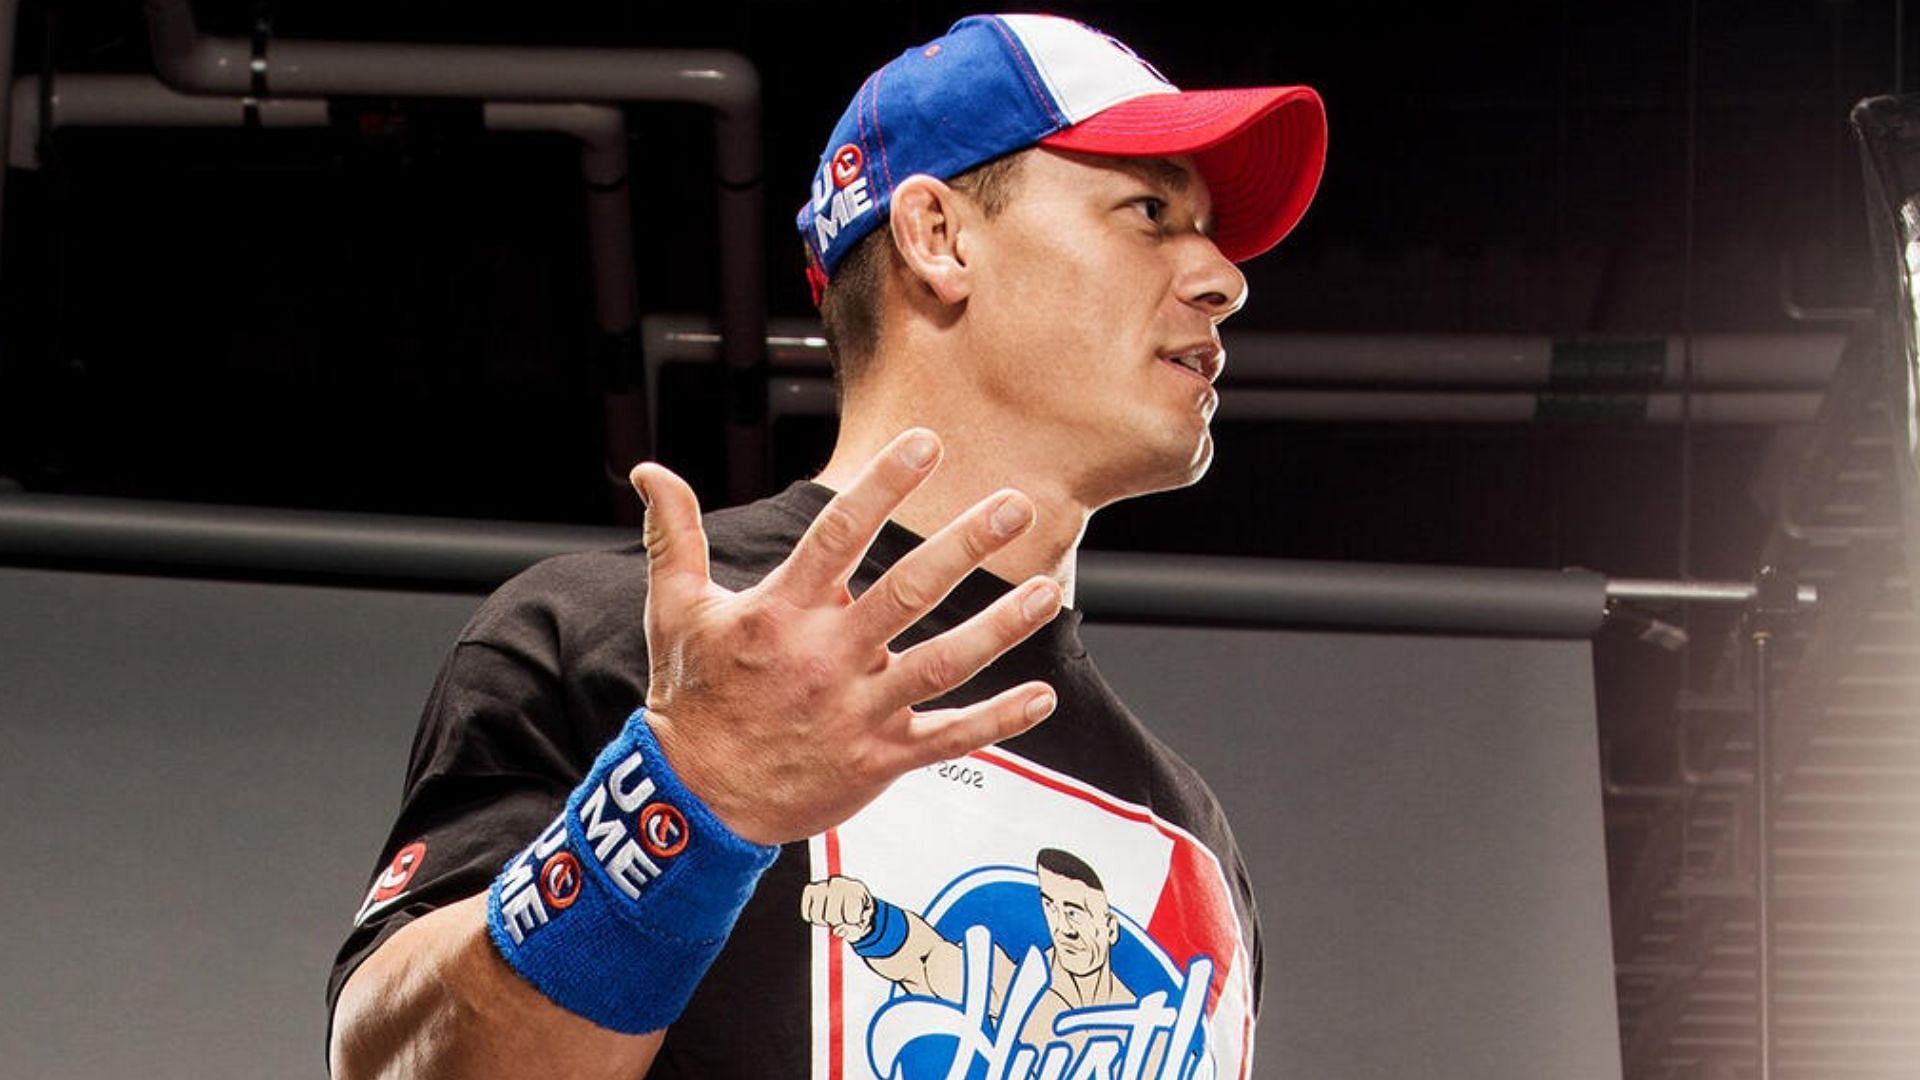 John Cena is no longer a full-time wrestler (Credit: WWE)